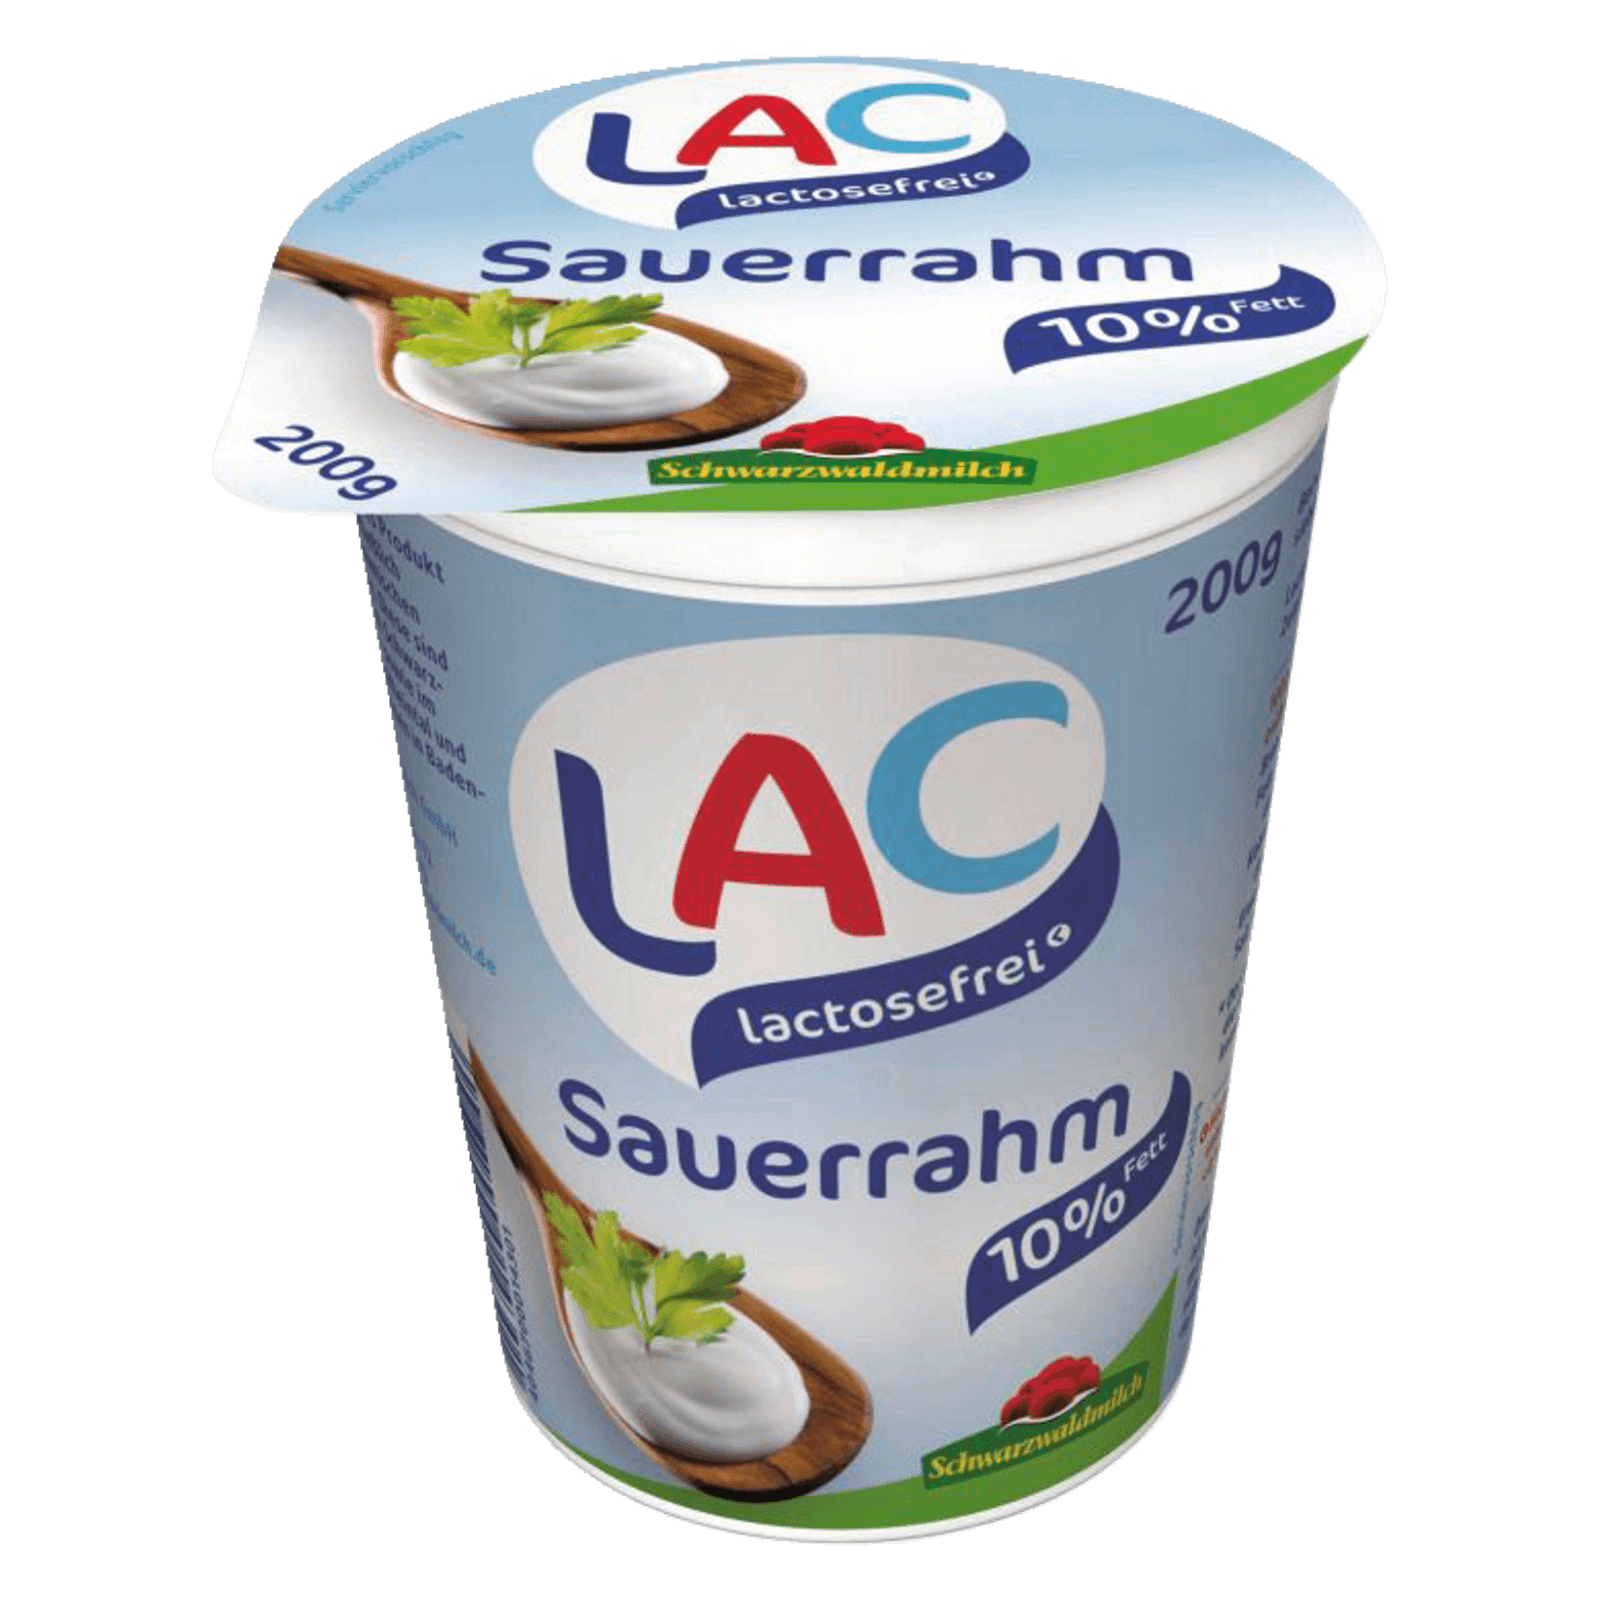 Schwarzwaldmilch LAC Sauerrahm 10% lactosefrei 200g  für 1.45 EUR